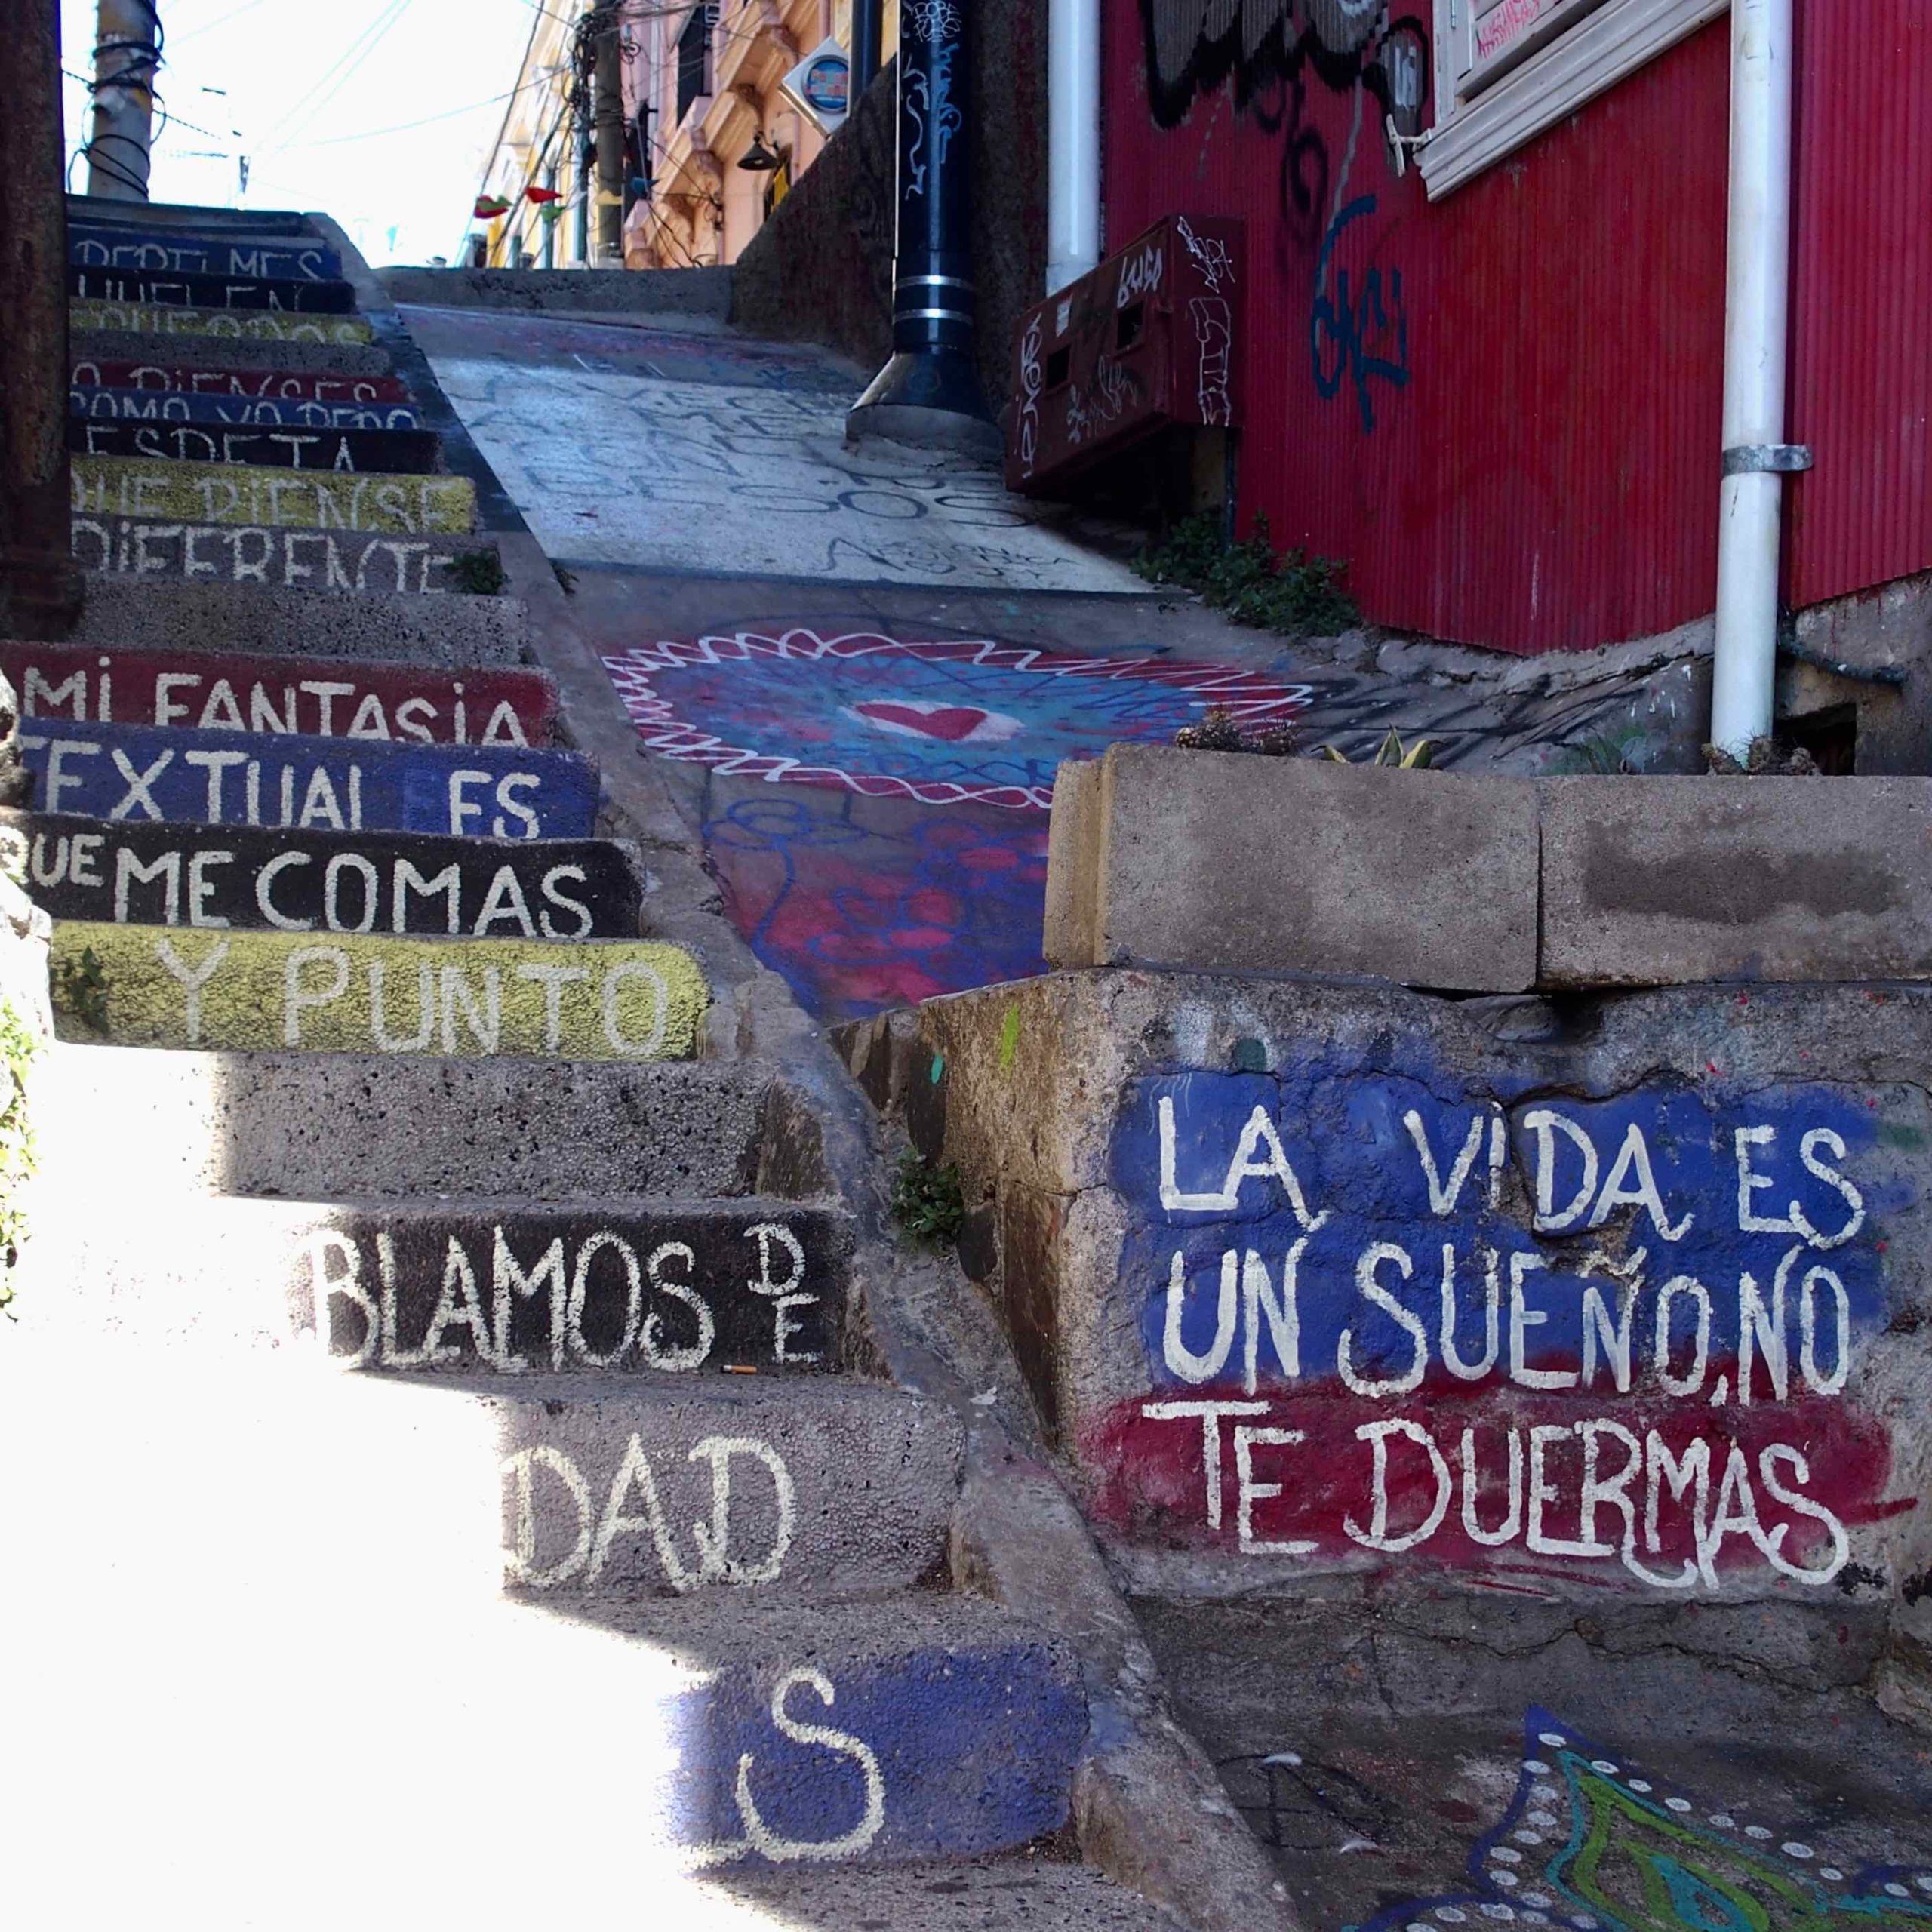 Escalier de Valparaiso et street art